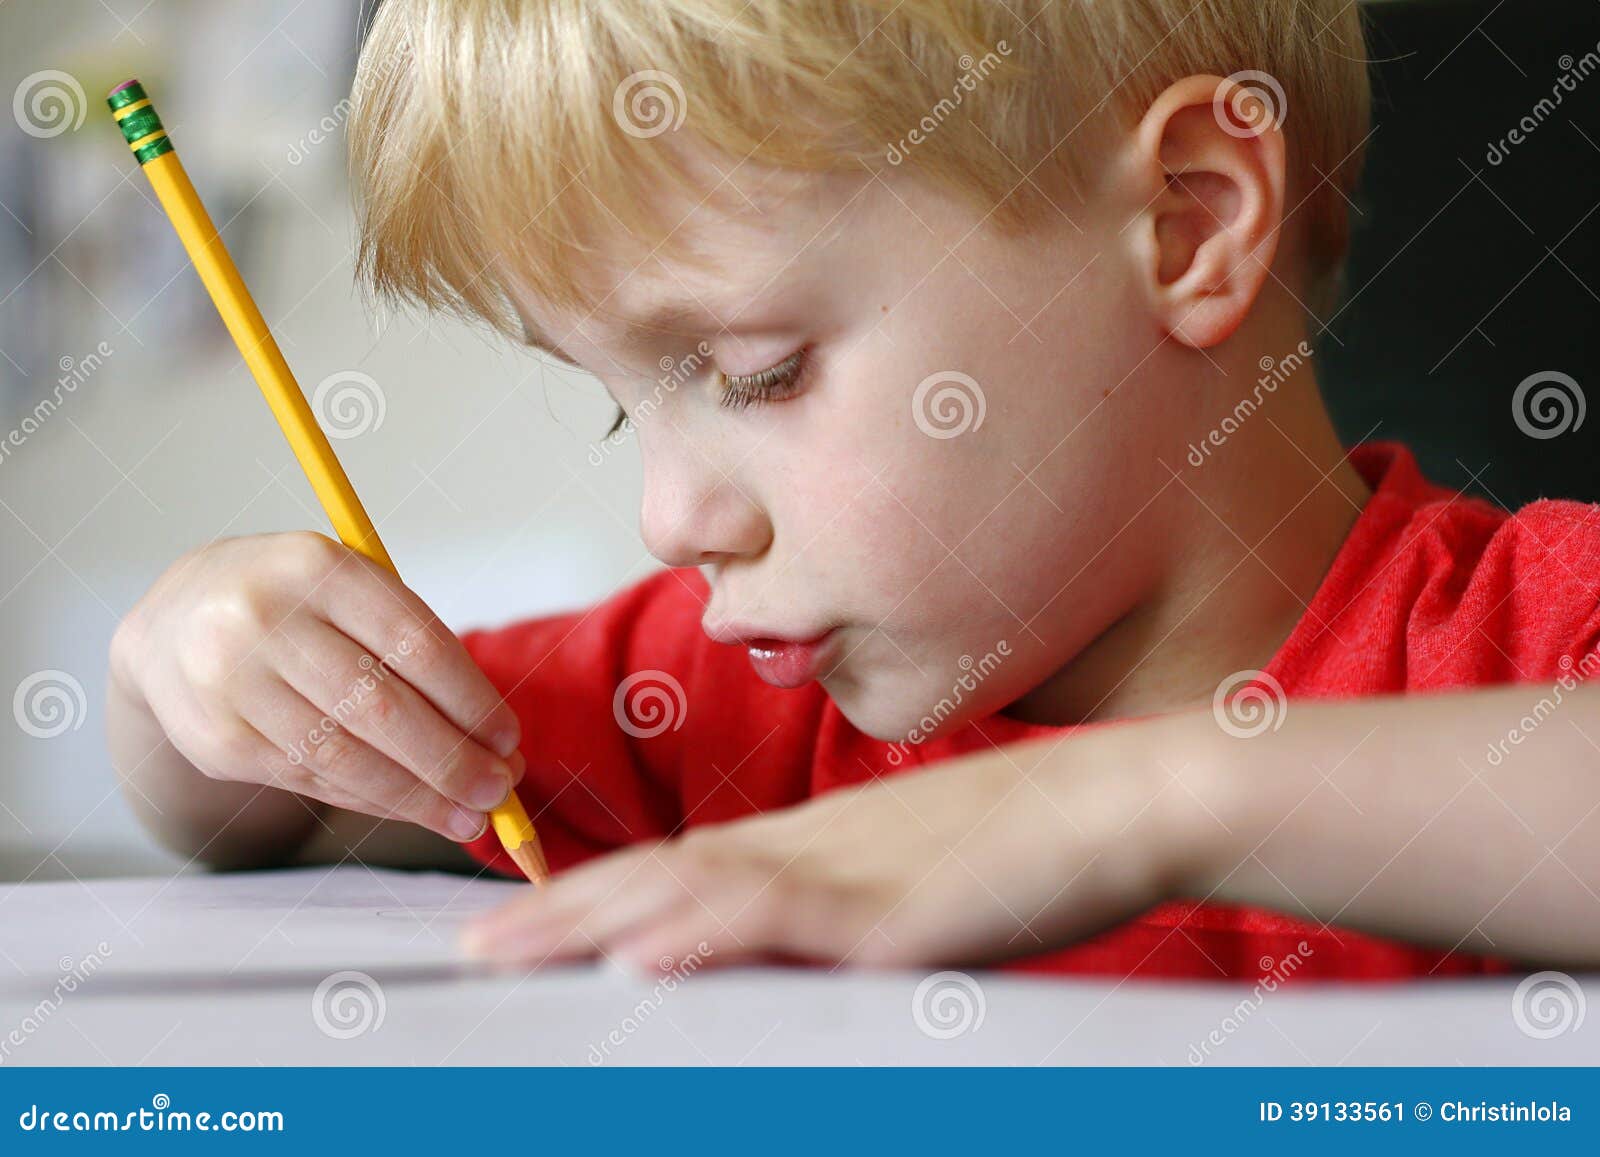 Młode Dziecko Rysunek Z Papierem I Ołówkiem Obraz Stock